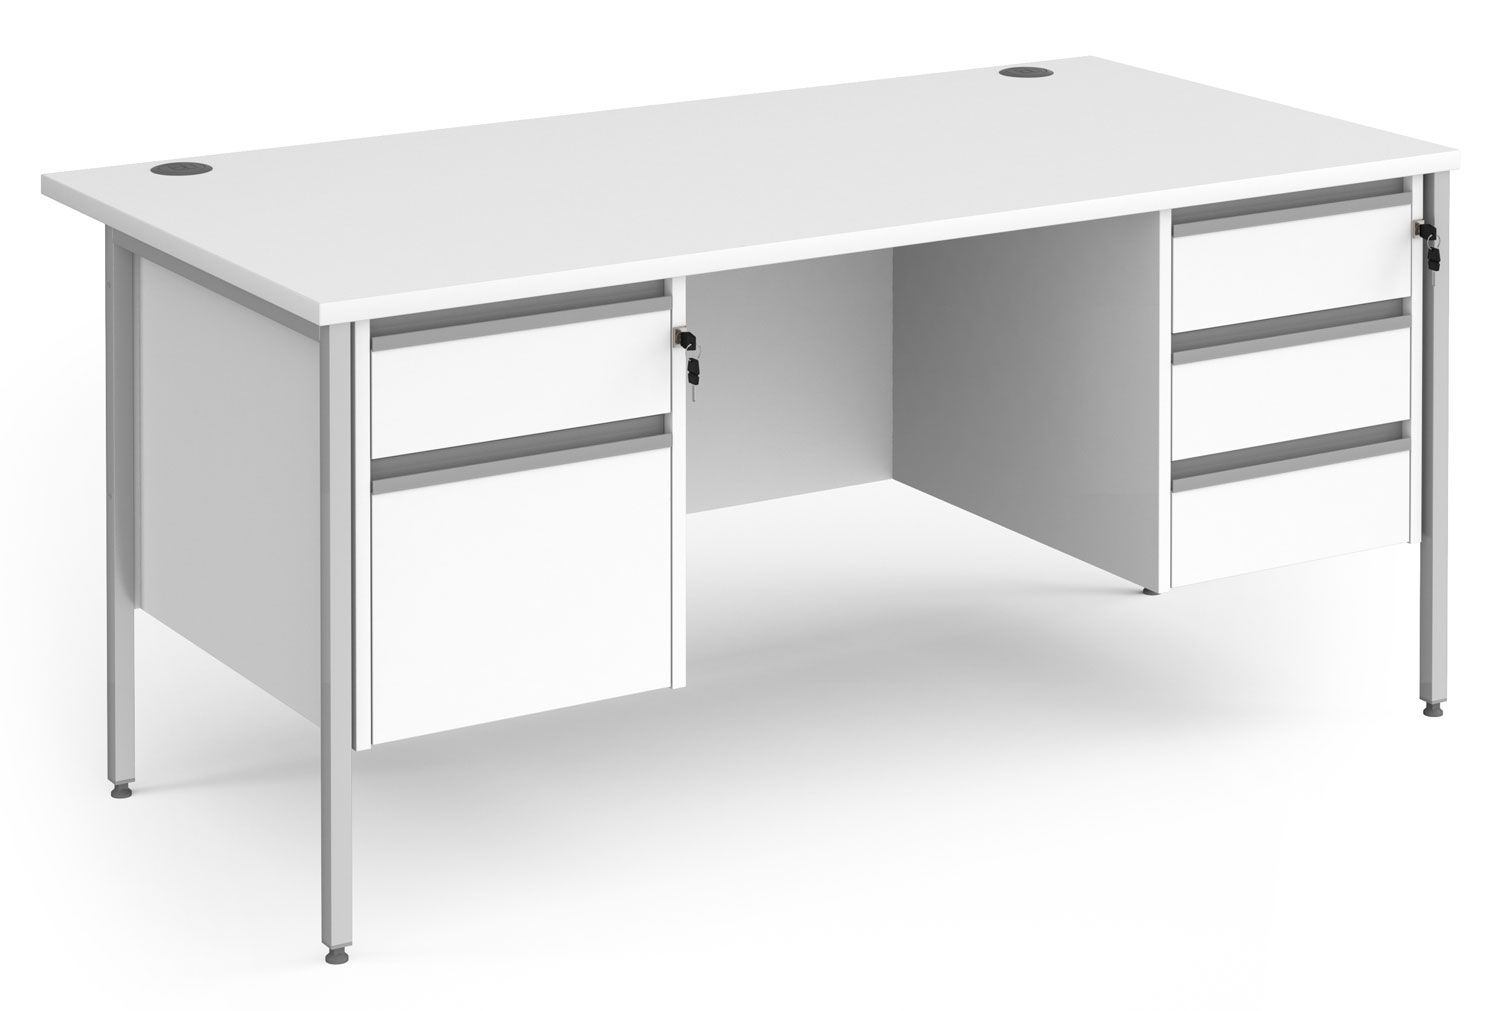 Value Line Classic+ Rectangular H-Leg Office Desk 2+3 Drawers (Silver Leg), 160wx80dx73h (cm), White, Fully Installed